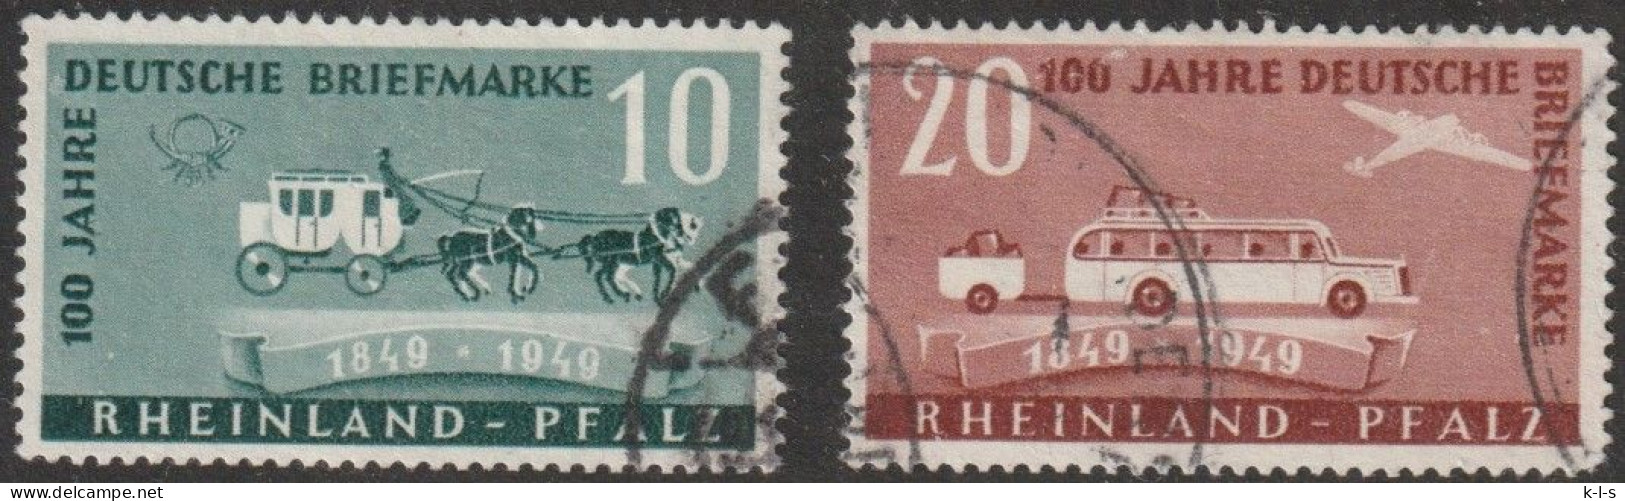 Franz. Zone- Rheinland Pfalz: 1949, Mi. Nr. 49-50,  100 Jahre Deutsche Briefmarken.  Gestpl./used - Renania-Palatinado